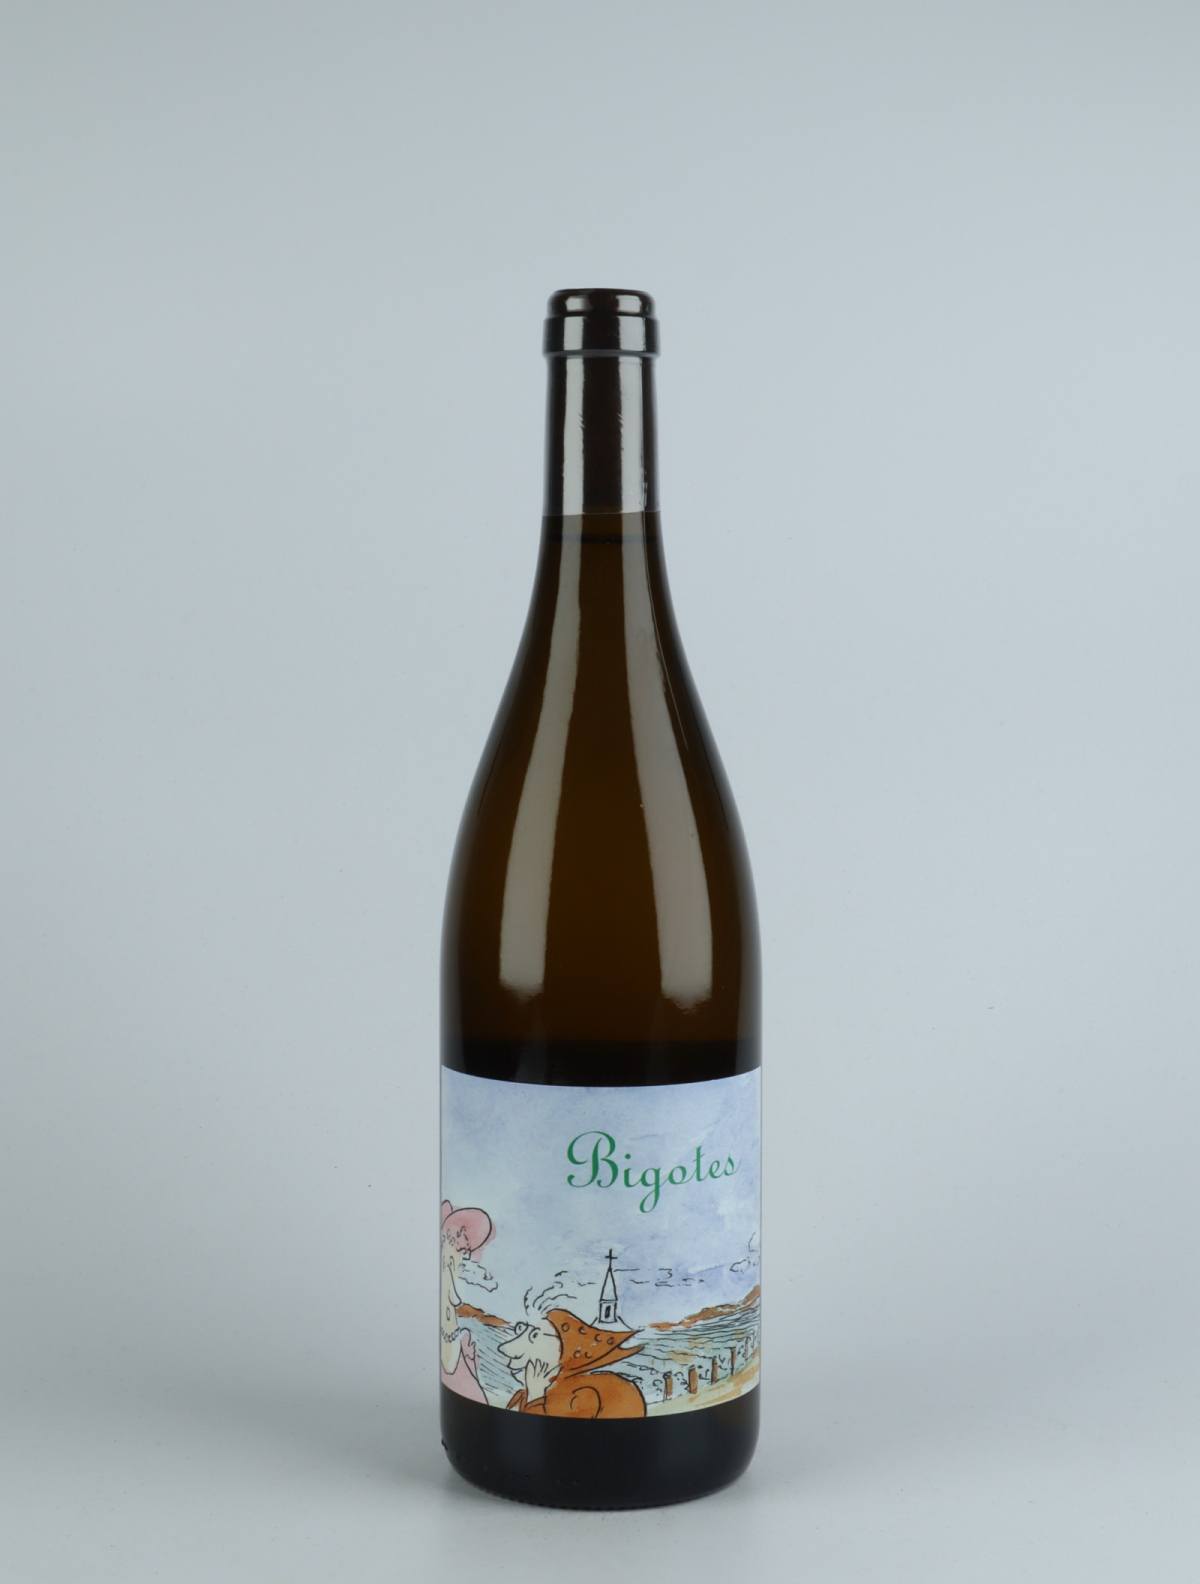 En flaske 2019 Bourgogne Blanc - Bigotes Hvidvin fra Frédéric Cossard, Bourgogne i Frankrig